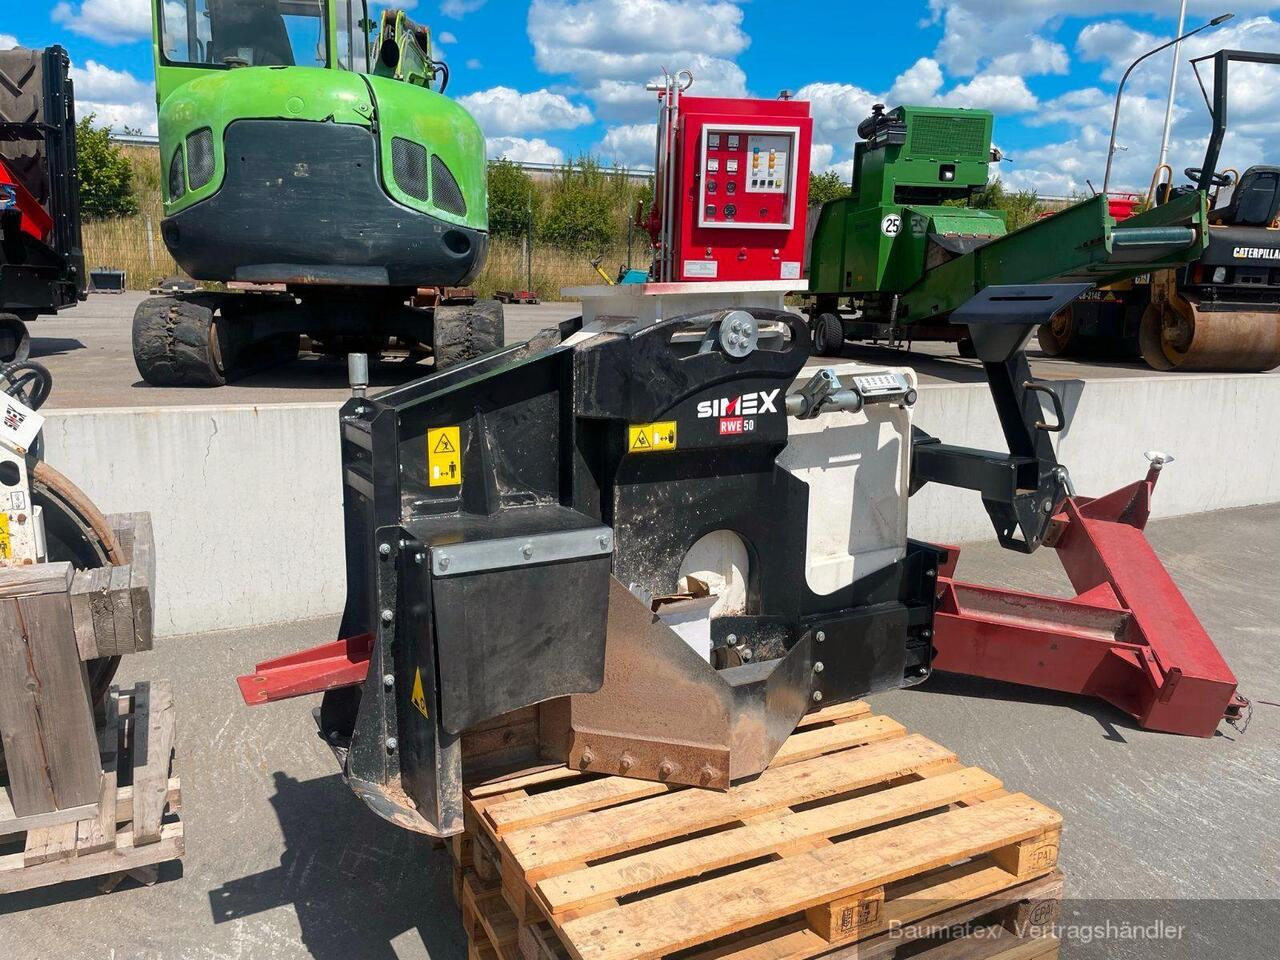 Ojankaivuukone Simex RWE50 für Bagger/ Traktoren ab 12to., SONDERPREIS!!: kuva Ojankaivuukone Simex RWE50 für Bagger/ Traktoren ab 12to., SONDERPREIS!!